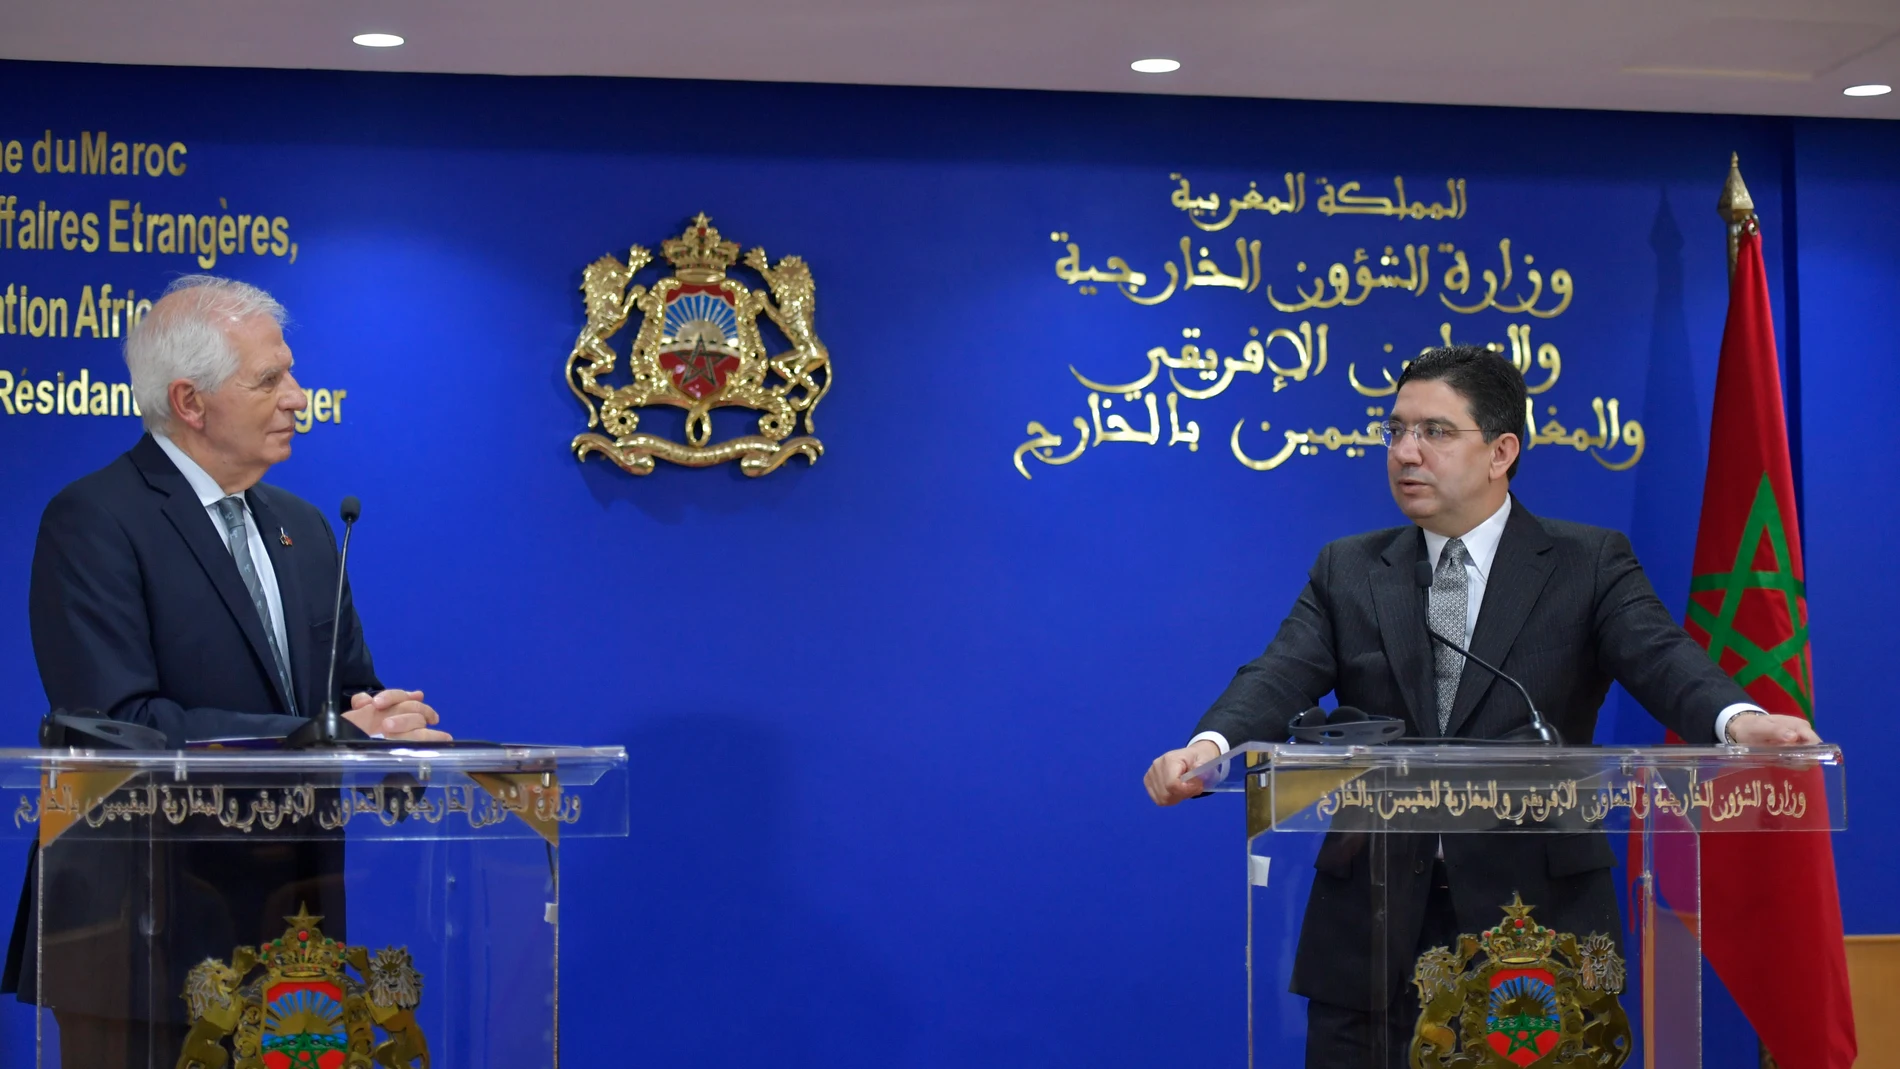 El ministro de Exteriores marroquí, Nasser Bourita, y Josep Borrel, alto representante de la Unión Europea en una conferencia de prensa el pasado 5 de enero